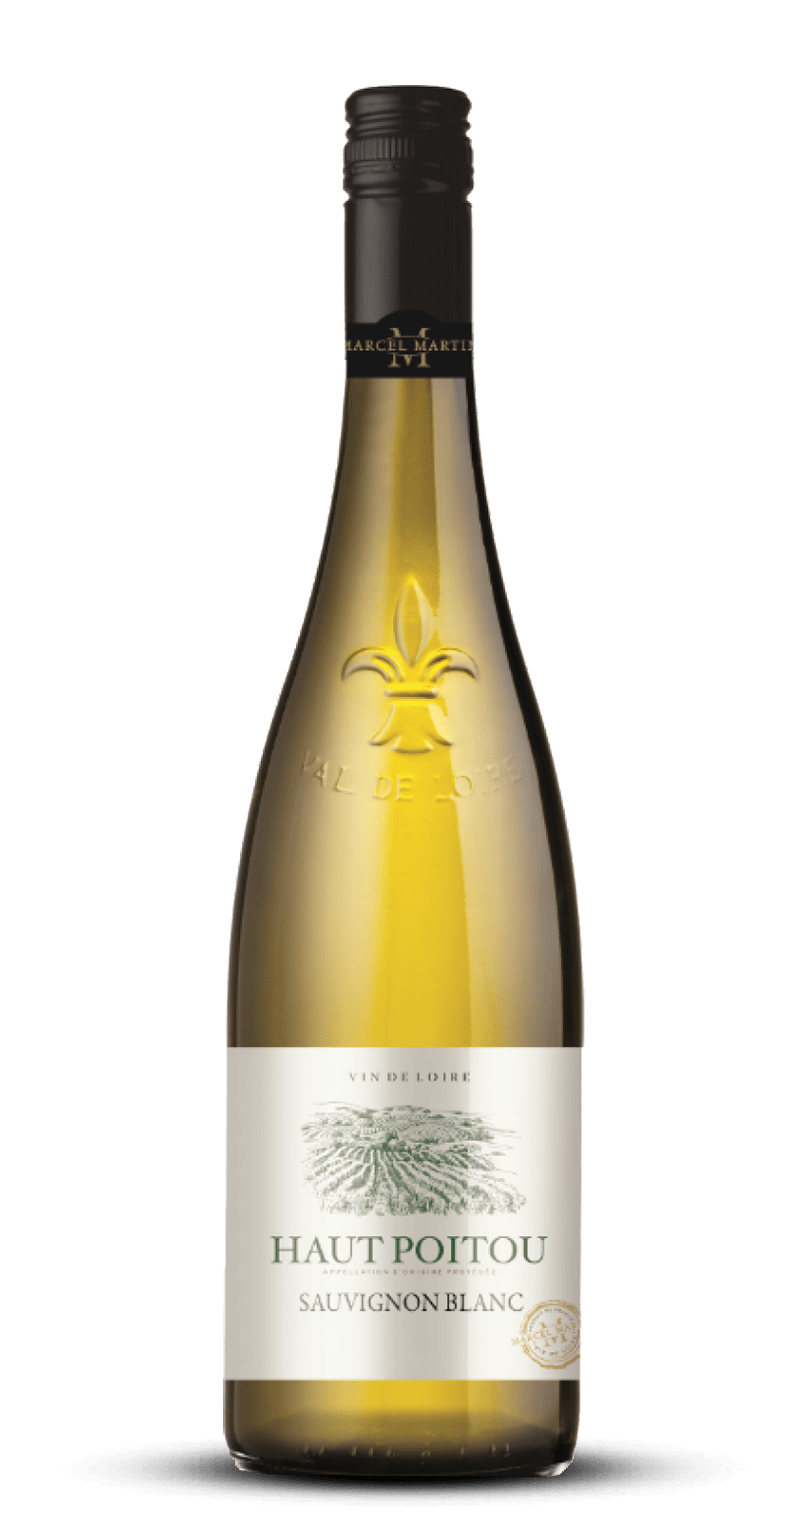 Wino fr. M Martin Sauvignon Blanc AOP Haut Poitou 12,5% BW 750ml/6 e*